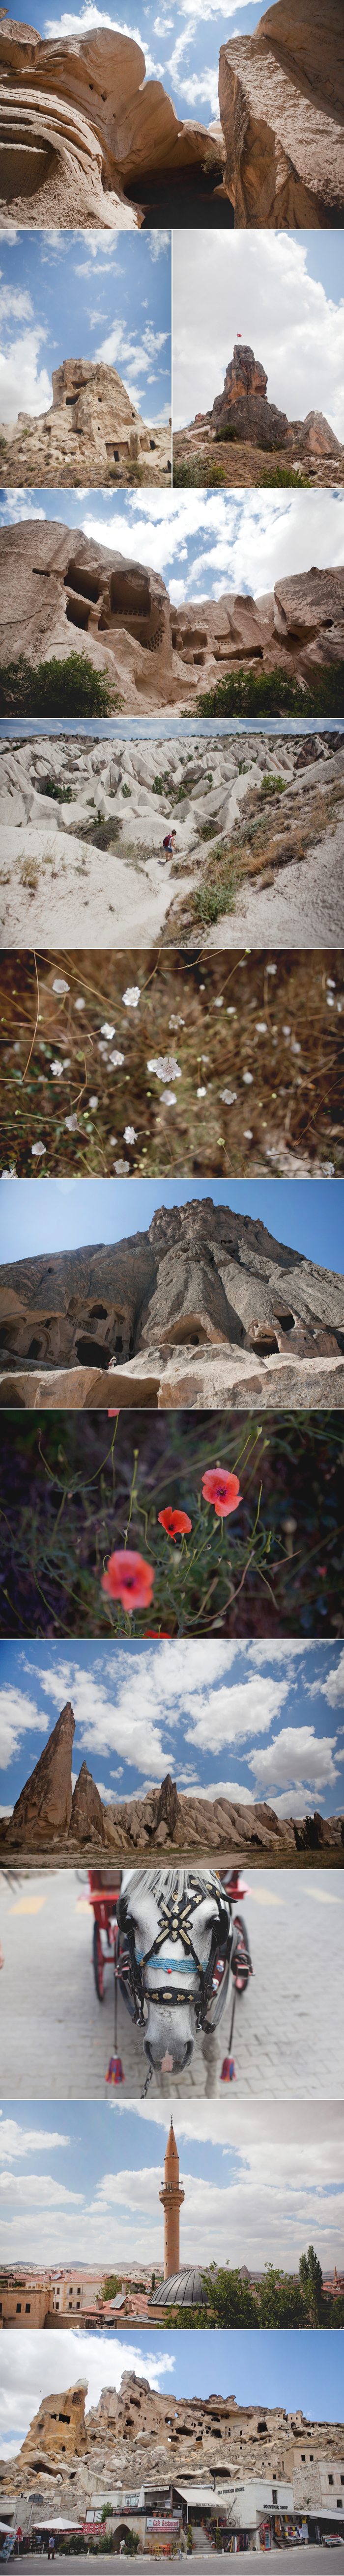 cappadocia1